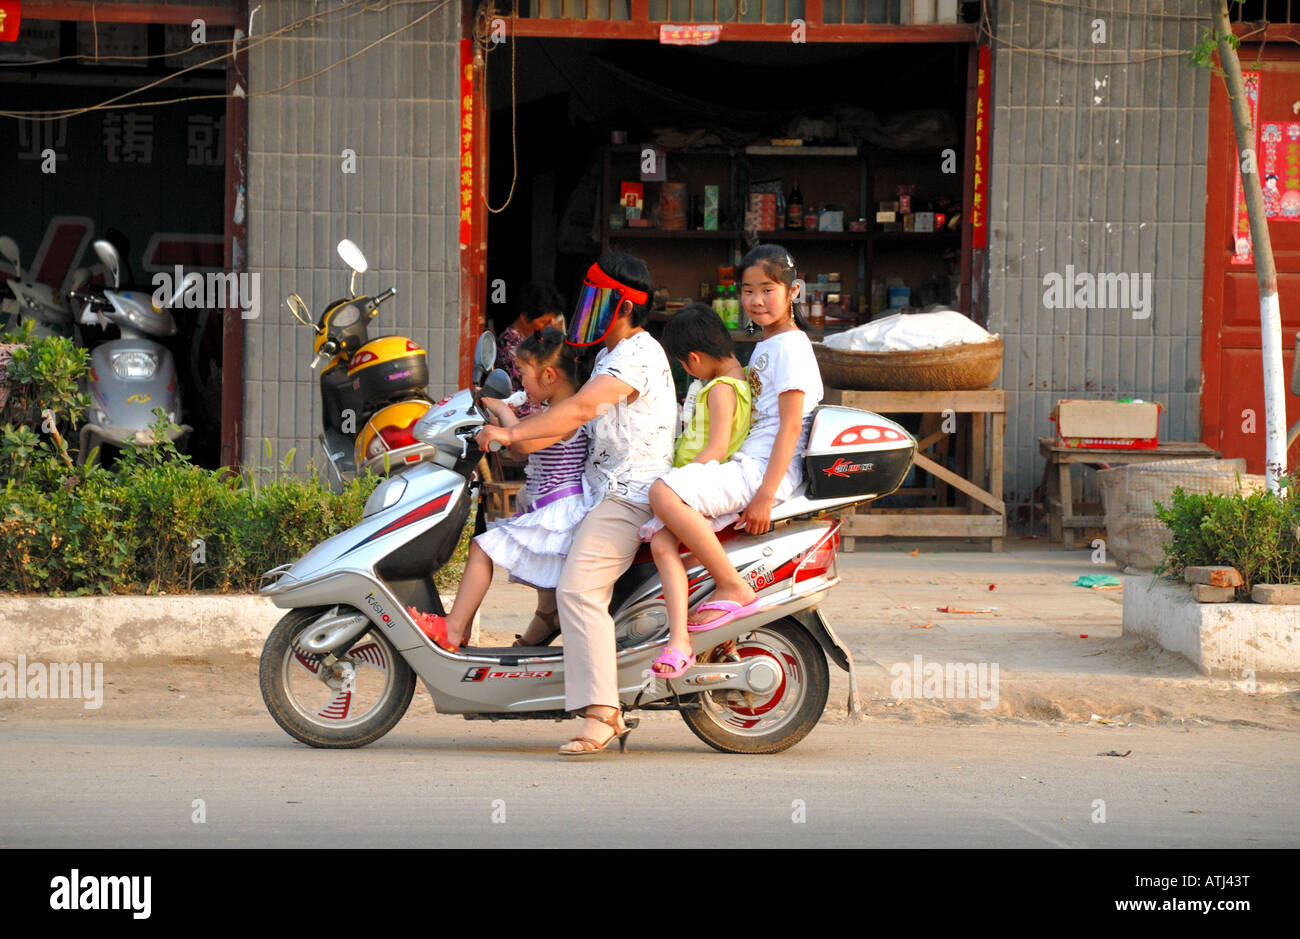 Vier Personen auf einem Motorroller unterwegs durch Taiqing Palast Quadrat Kaifeng Henan Provinz China Asien Anfahren Stockfoto